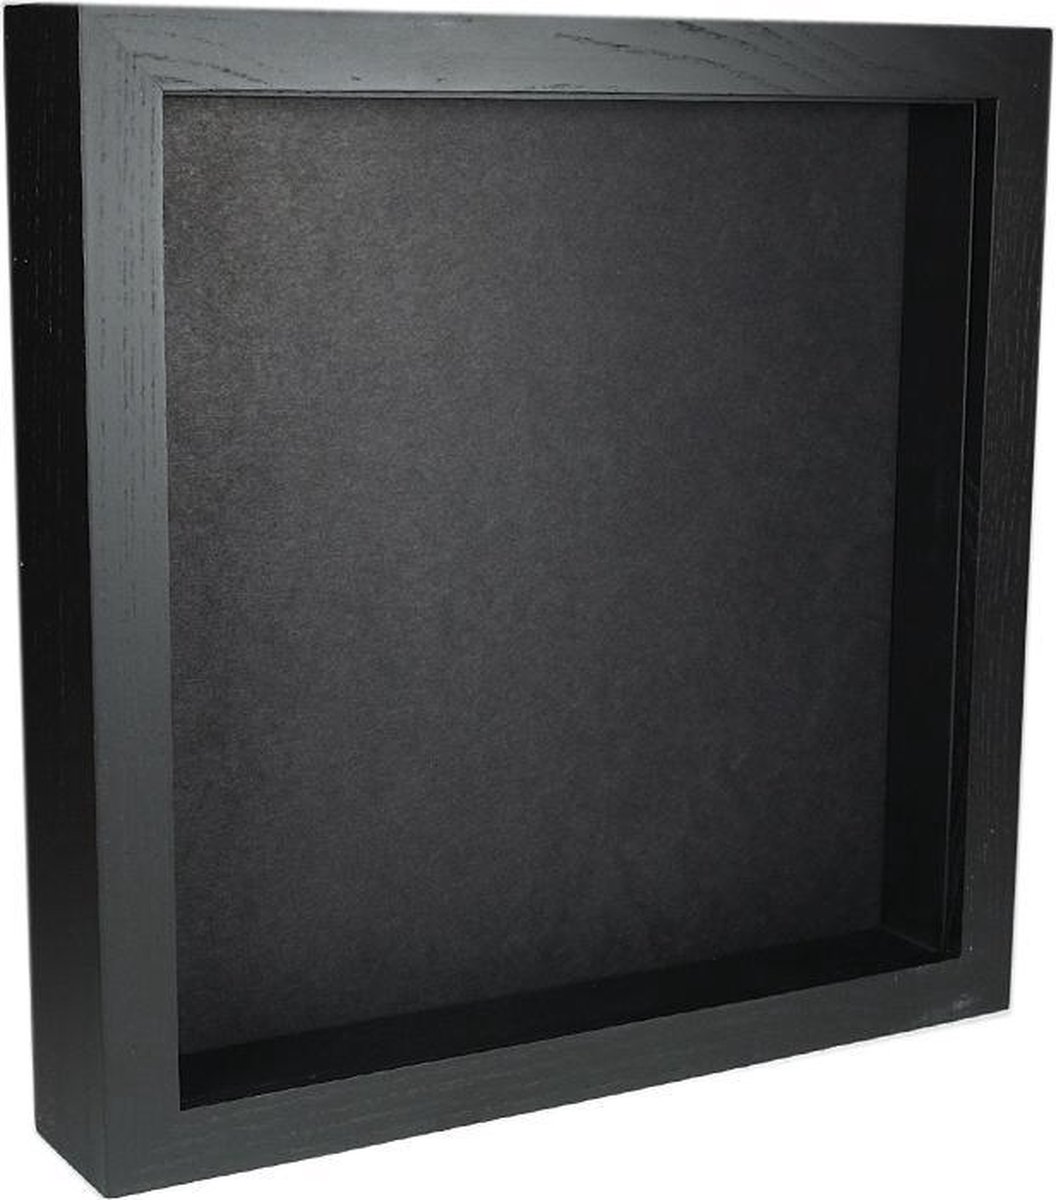 Elegant zwart houten lijst 25 cm x 25 cm met zwarte achtergrond - De museumwinkel.com